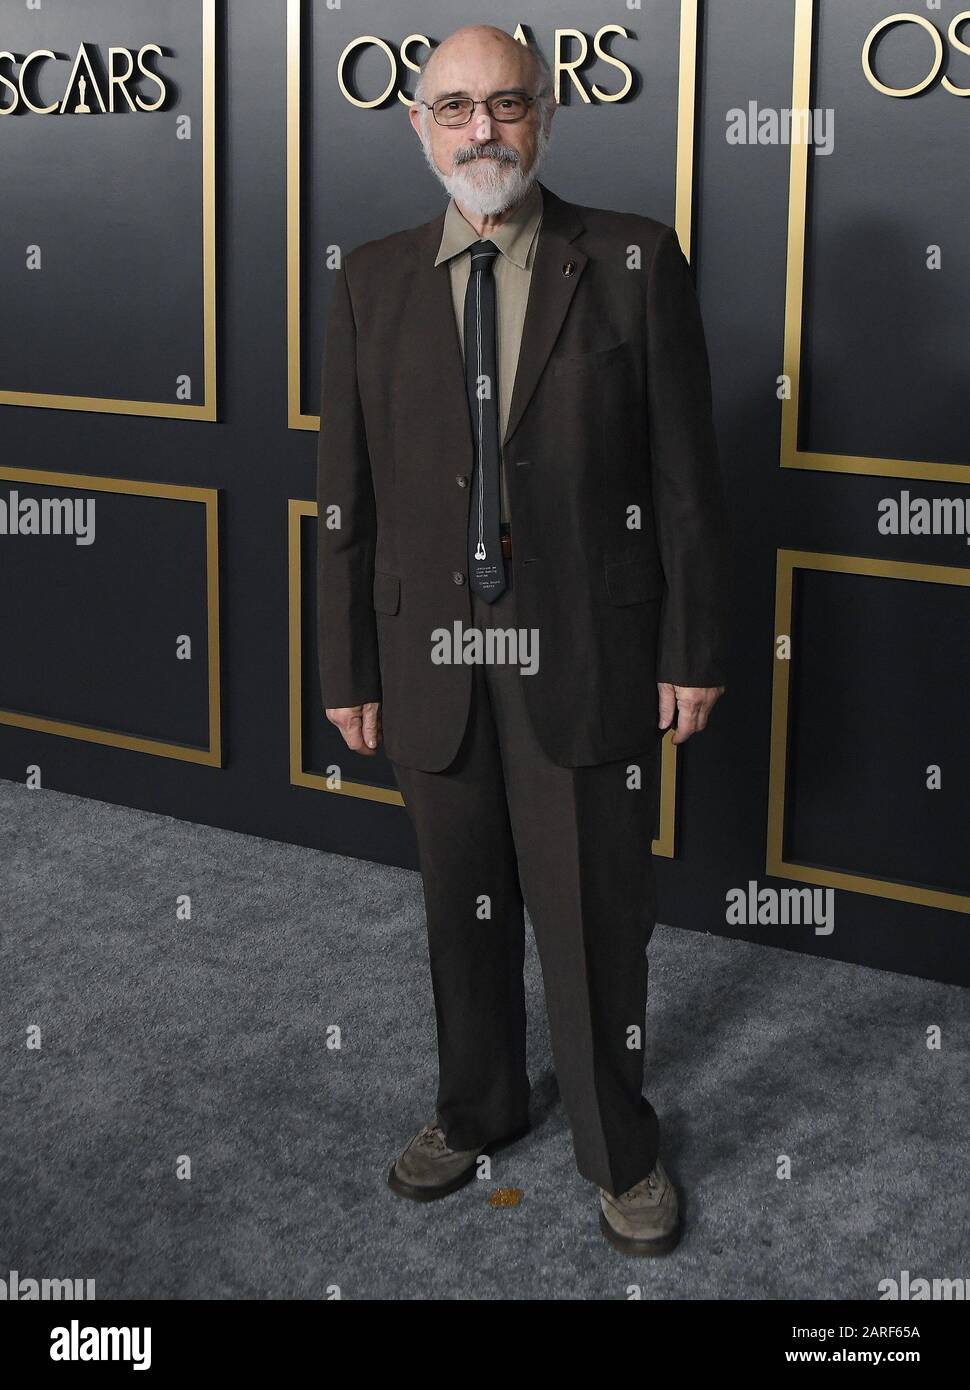 Mark Ulano arrive au 92ème dîner des Oscars Nominés qui s'est tenu à la salle Ray Dolby Ballroom à Hollywood & Highland à Hollywood, Californie, le lundi 27 janvier 2020. (Photo De Athanlee B. Mirador/Sipa États-Unis) Banque D'Images